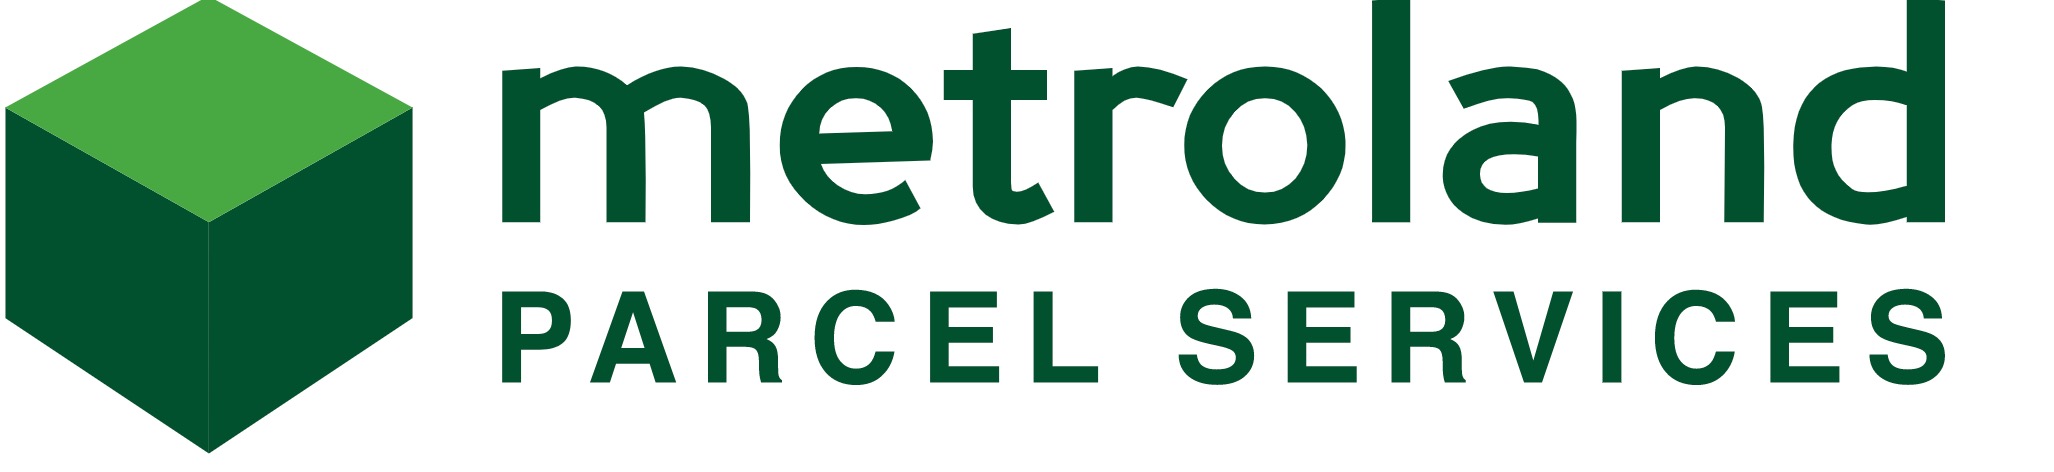 Metroland Parcel Services (MPS)